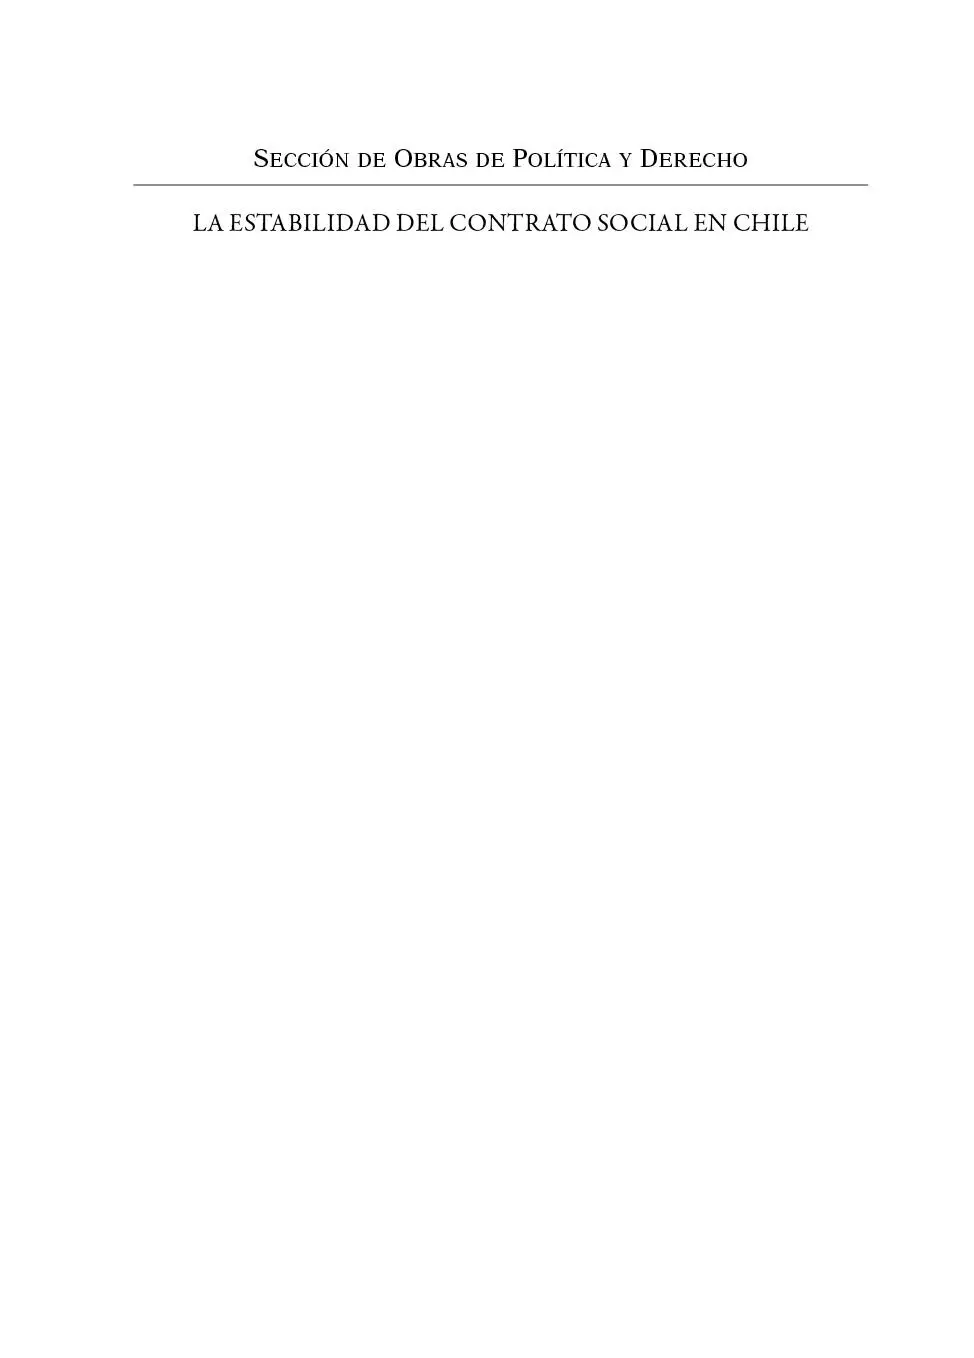 Primera edición fce Chile 2021 Larraín Guillermo La estabilidad del contrato - фото 1